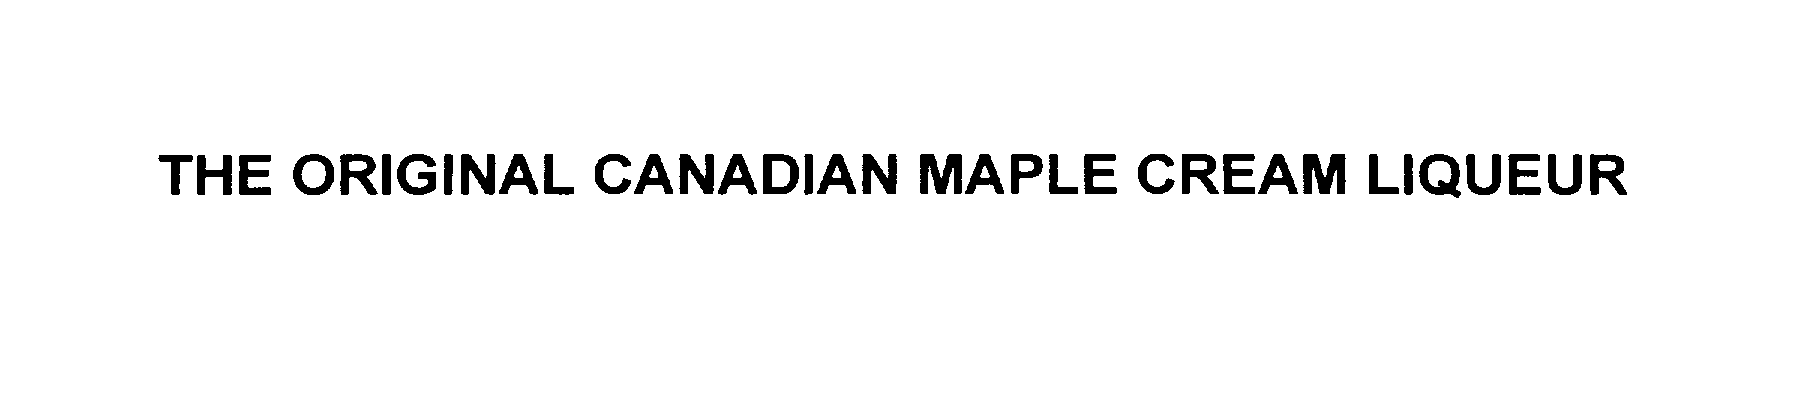  THE ORIGINAL CANADIAN MAPLE CREAM LIQUEUR